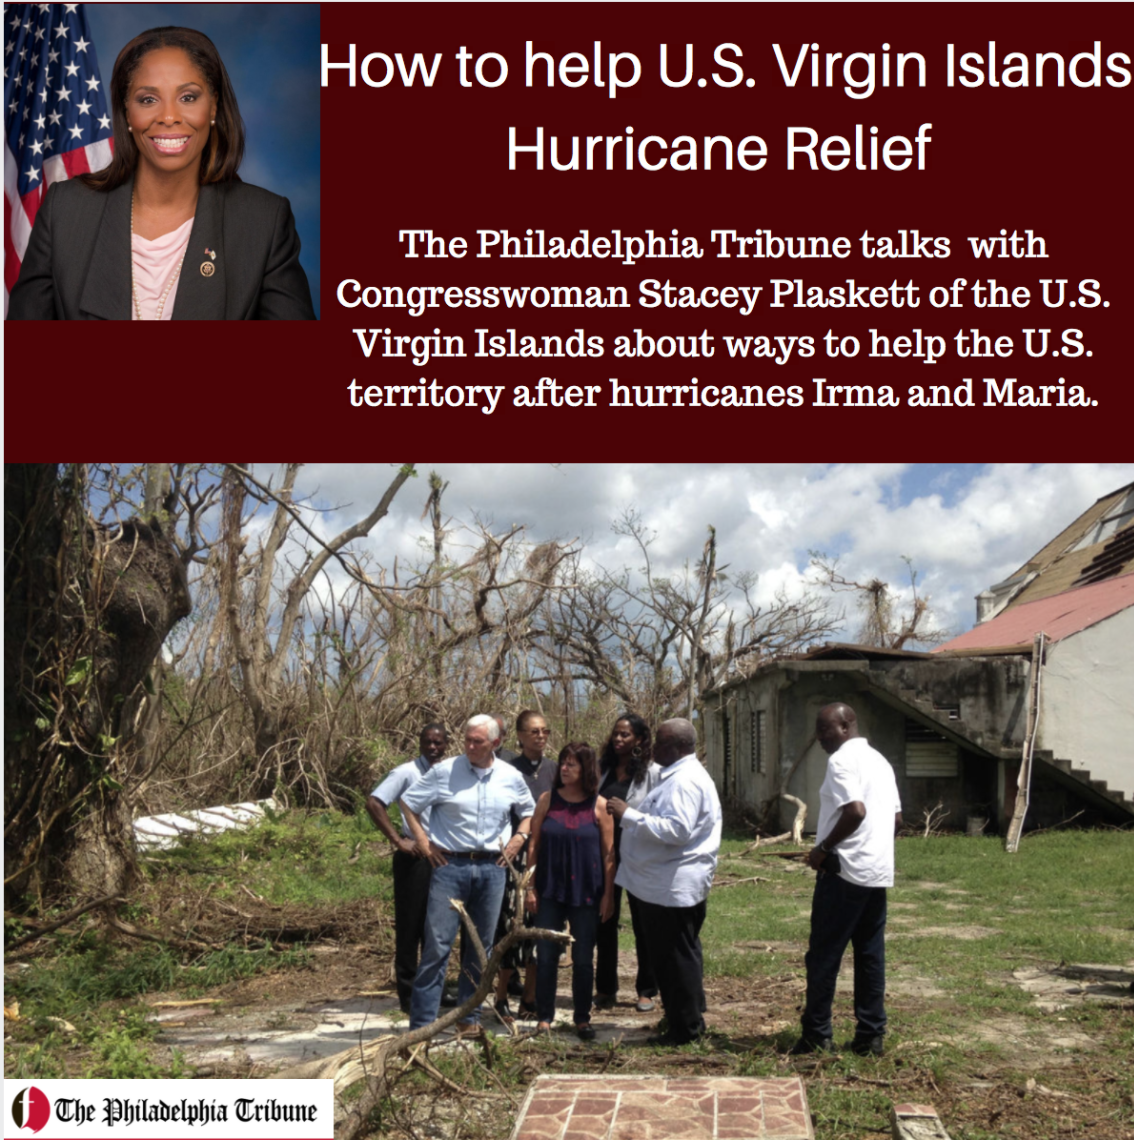 10/06/17: PODCAST: How to help U.S. Virgin Islands hurricane relief